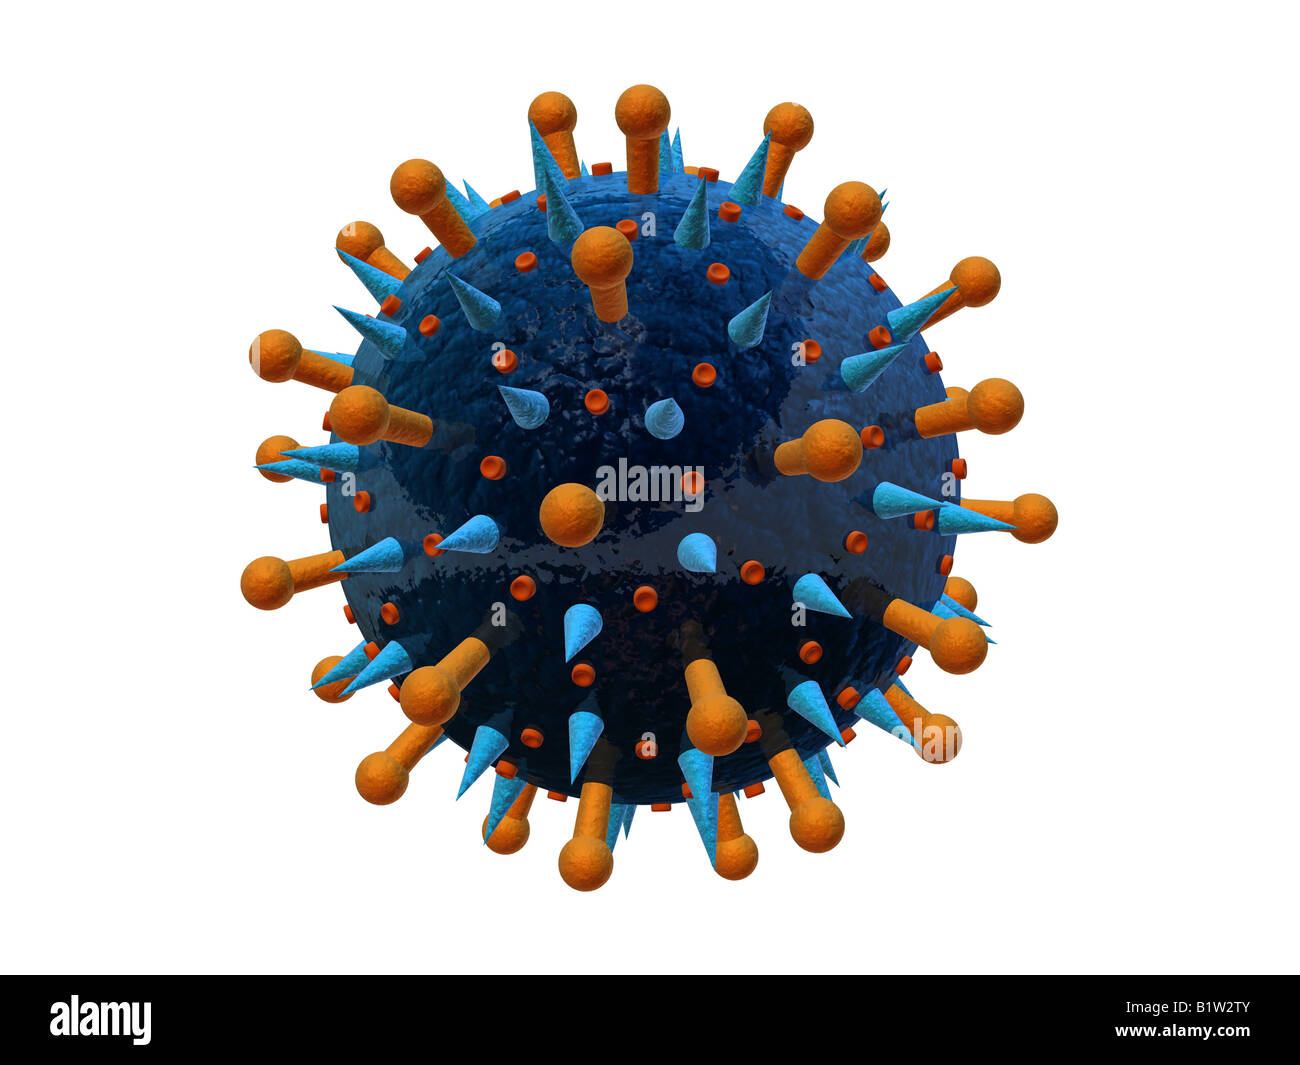 influenza virus Stock Photo